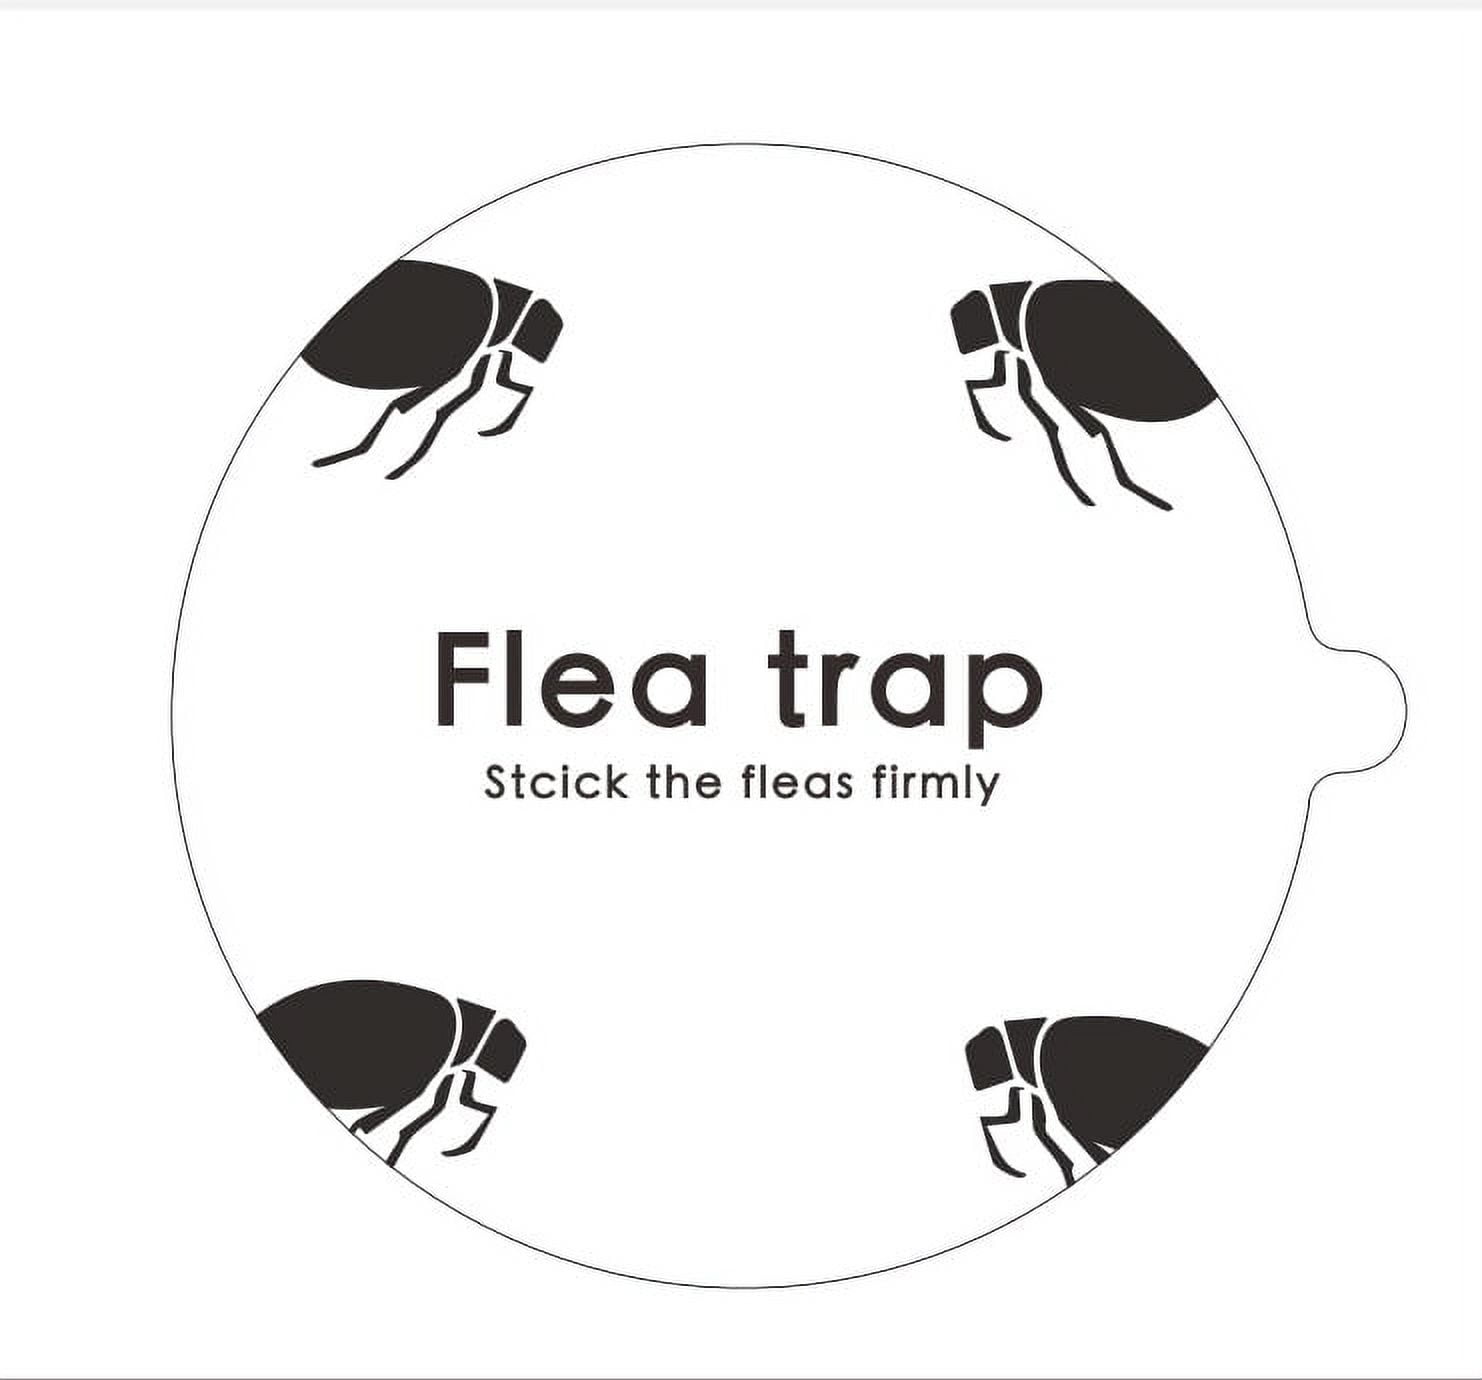 Sticky Flea Trap Dome Flea Bed Bug Trap With 2 Glue Discs Flea Pad Light  D2C5